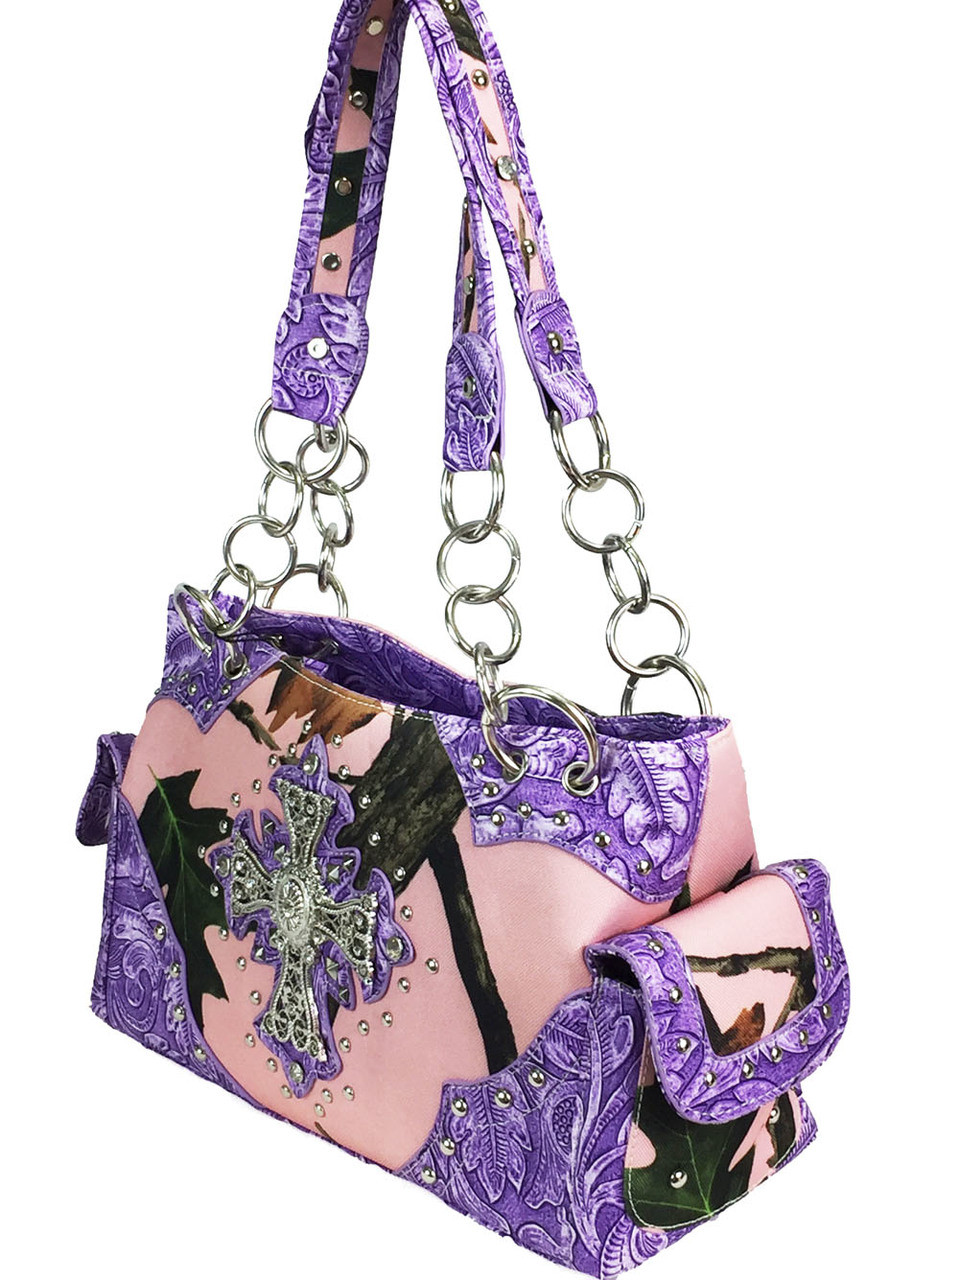 Camouflage Horse Women Handbag Concealed Carry Purse Shoulder Bag Wallet  Purple | eBay